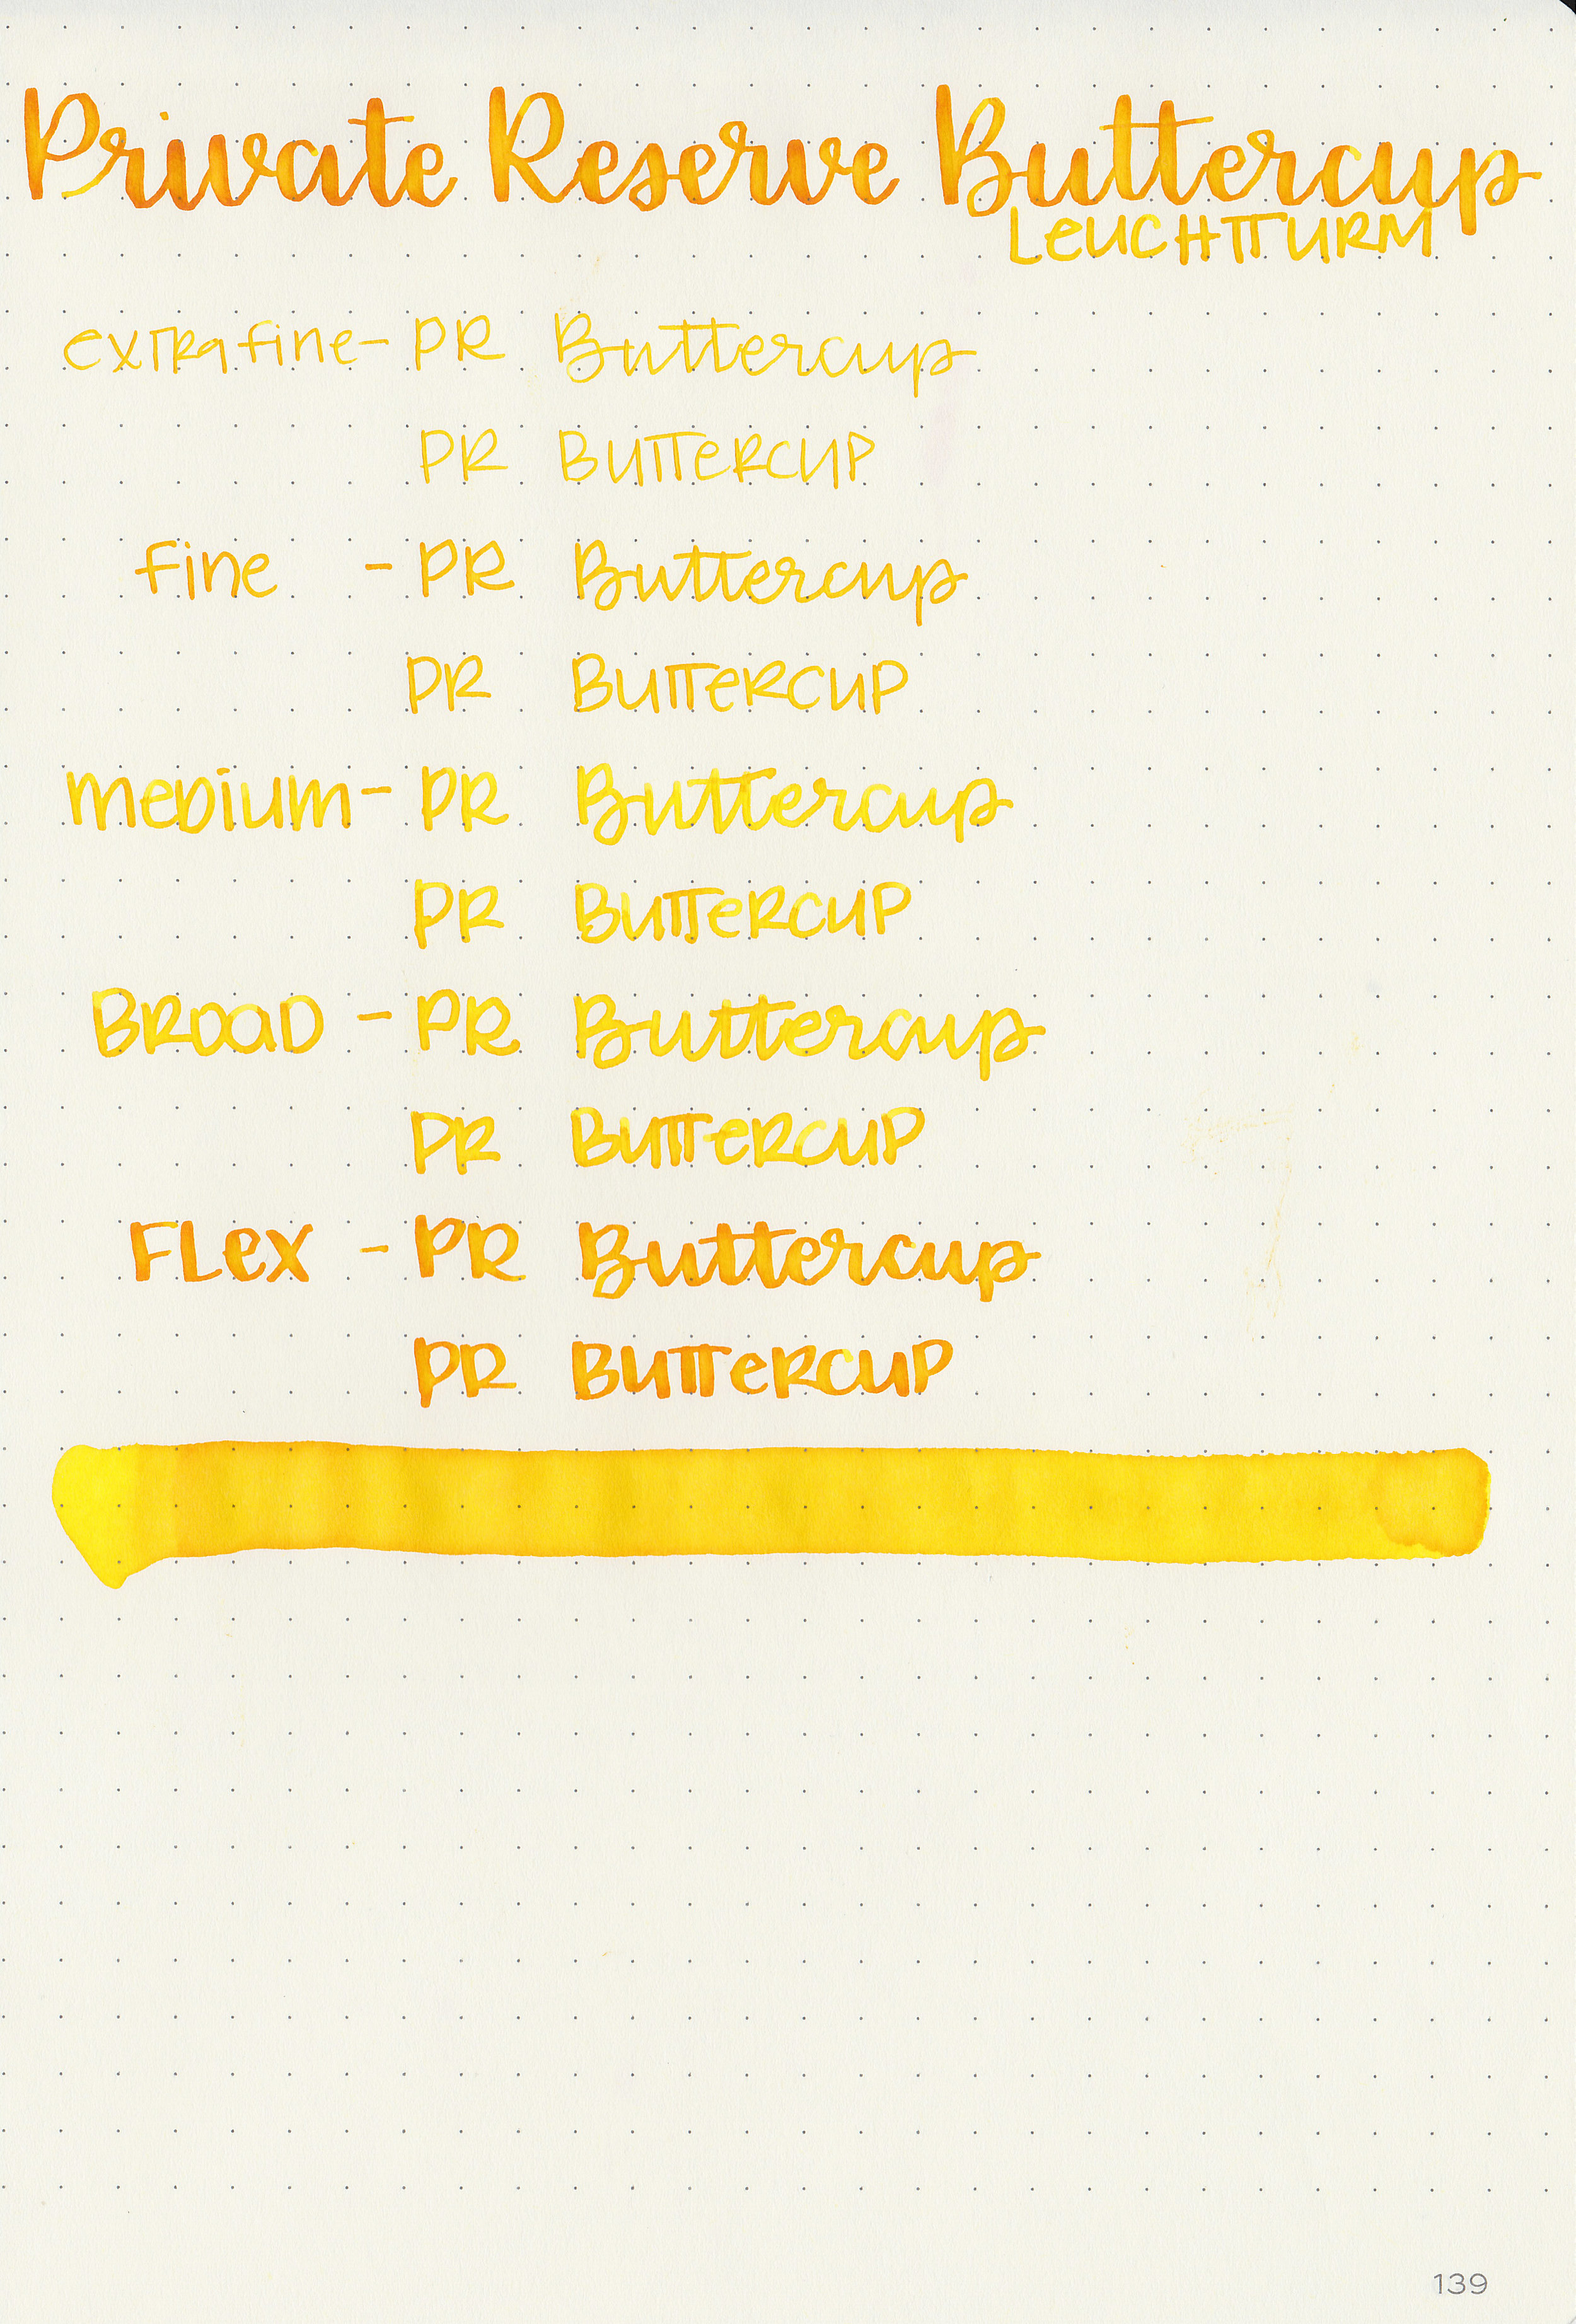 pr-buttercup-11.jpg